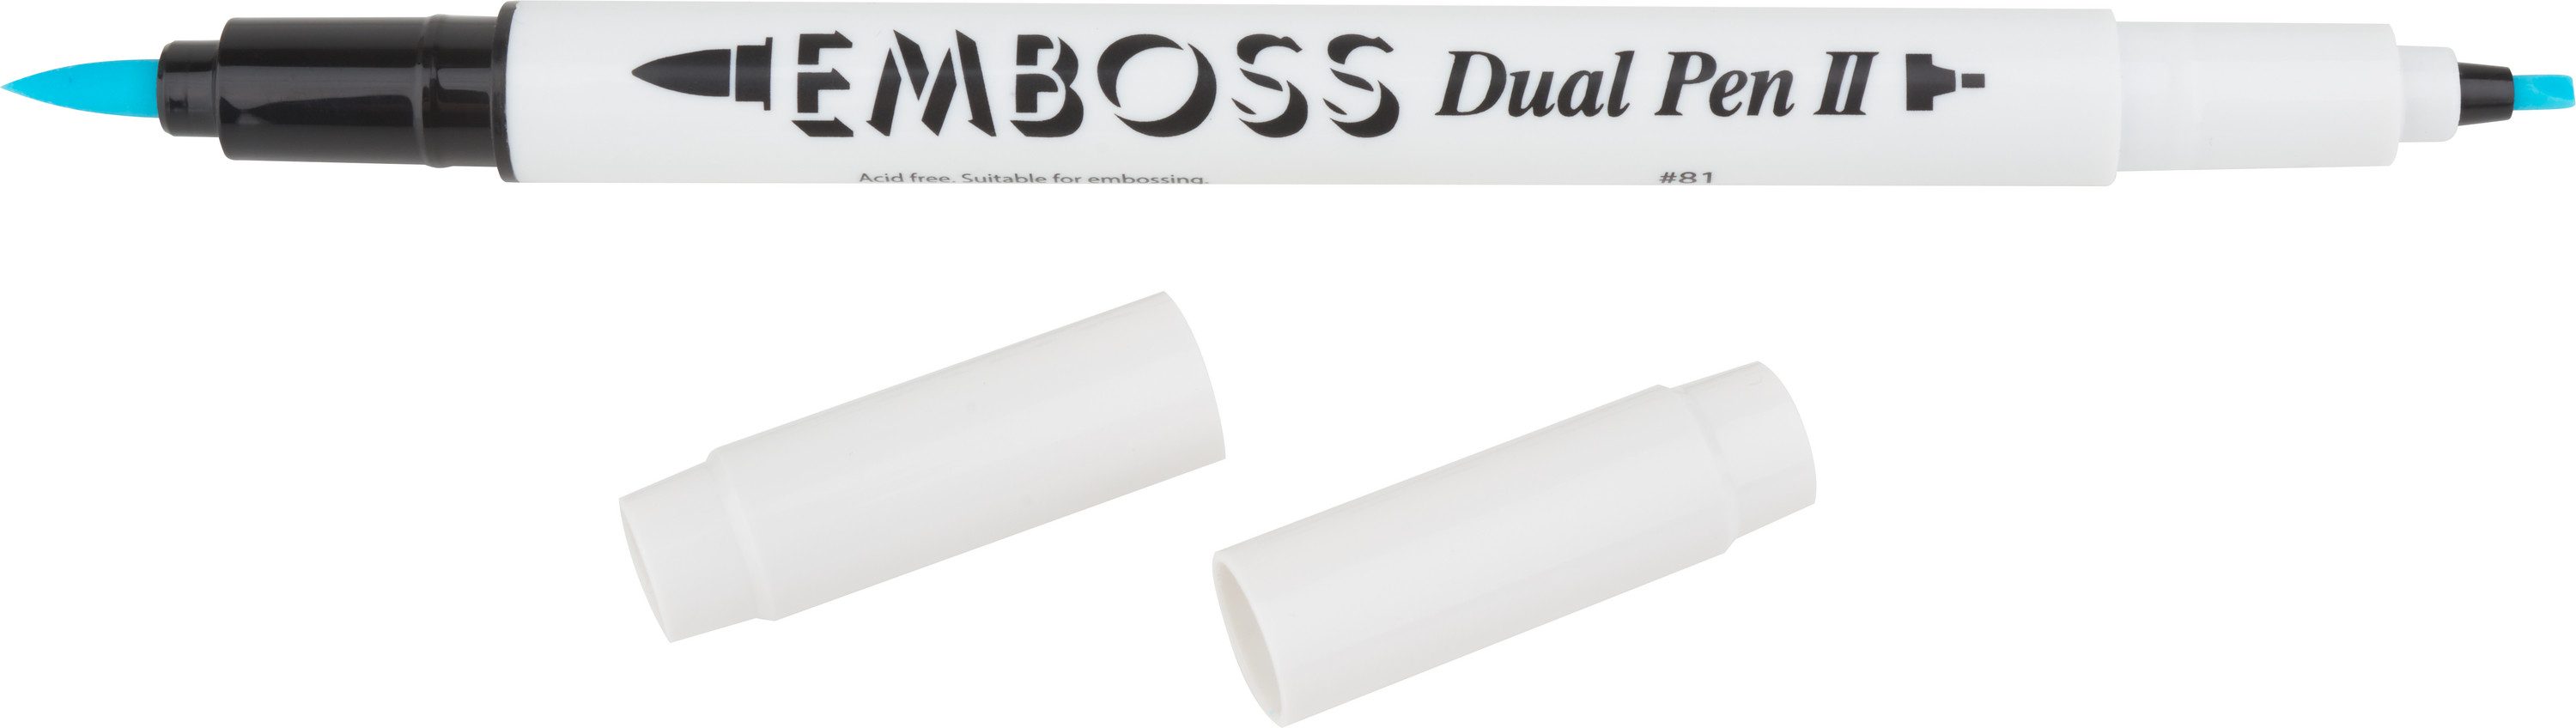 efco Stempel Embossing-Dual-Pen, 18 cm lang